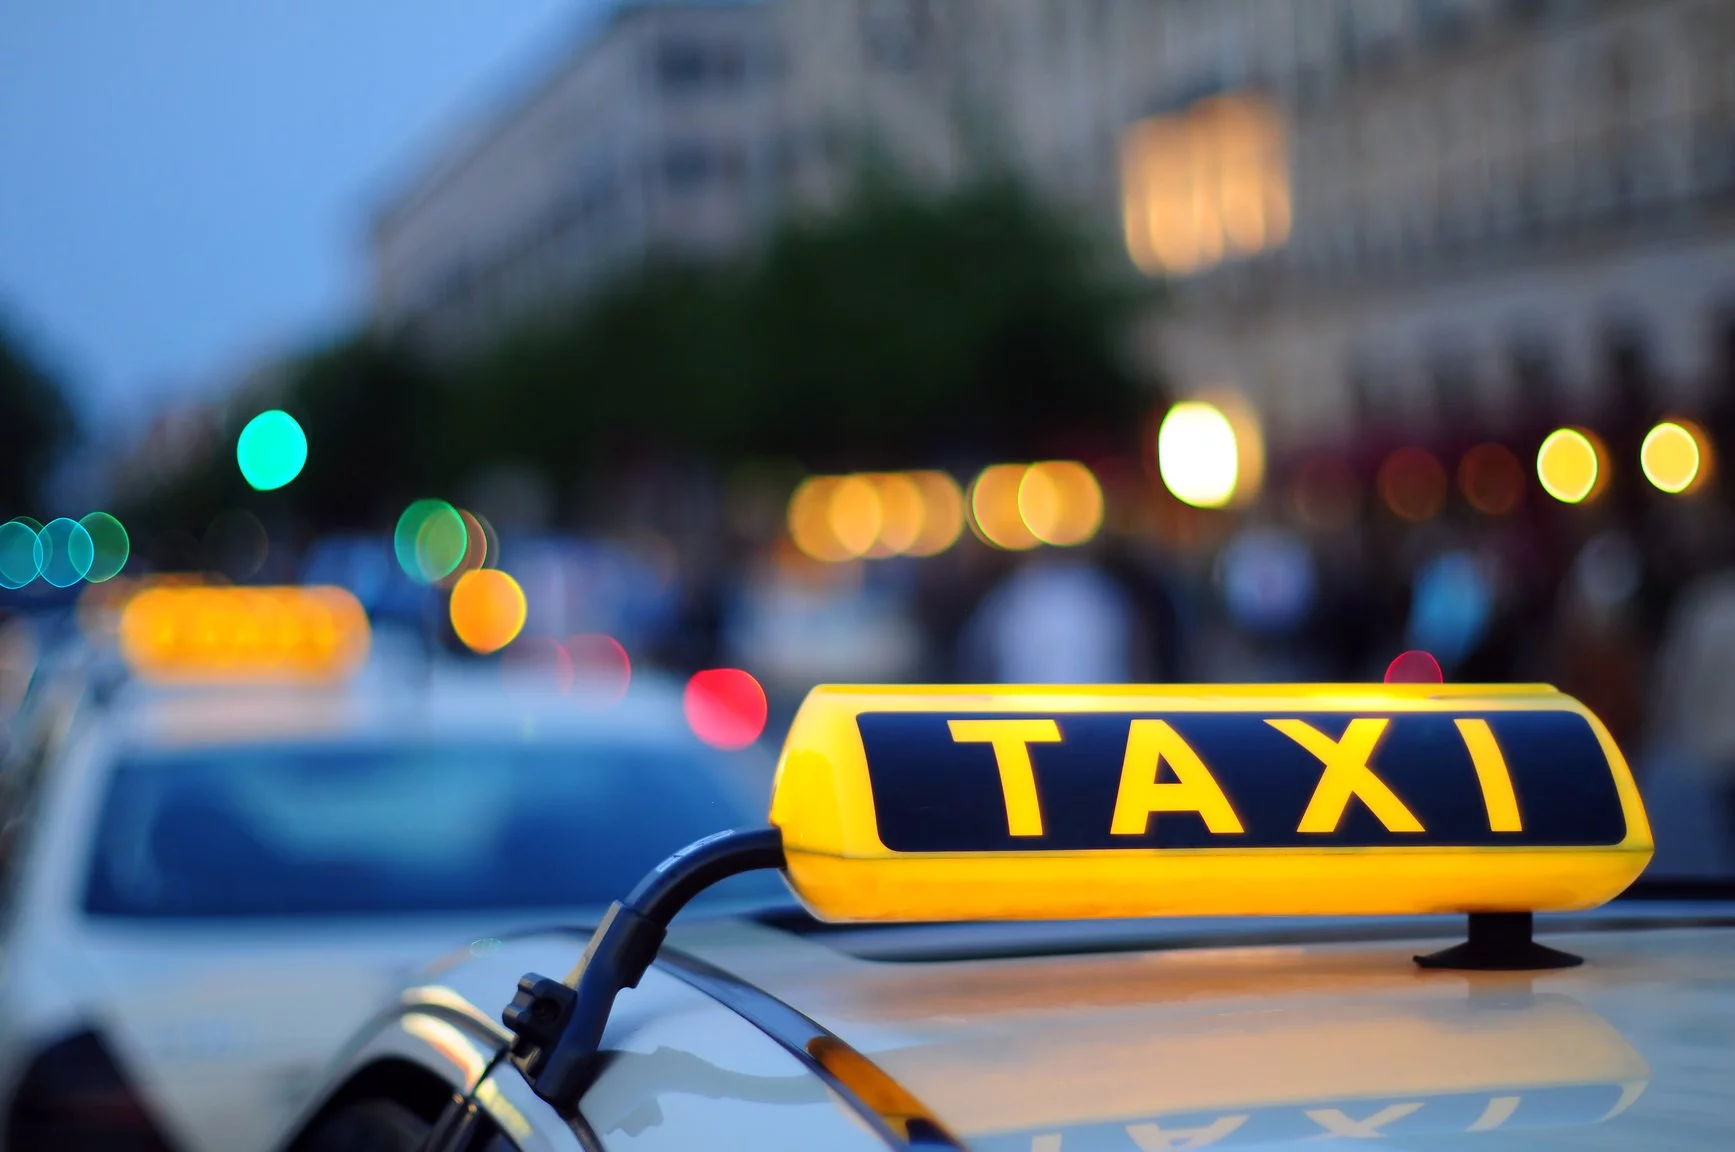 Таксист домогался пассажирки во время выполнения заказов по городу